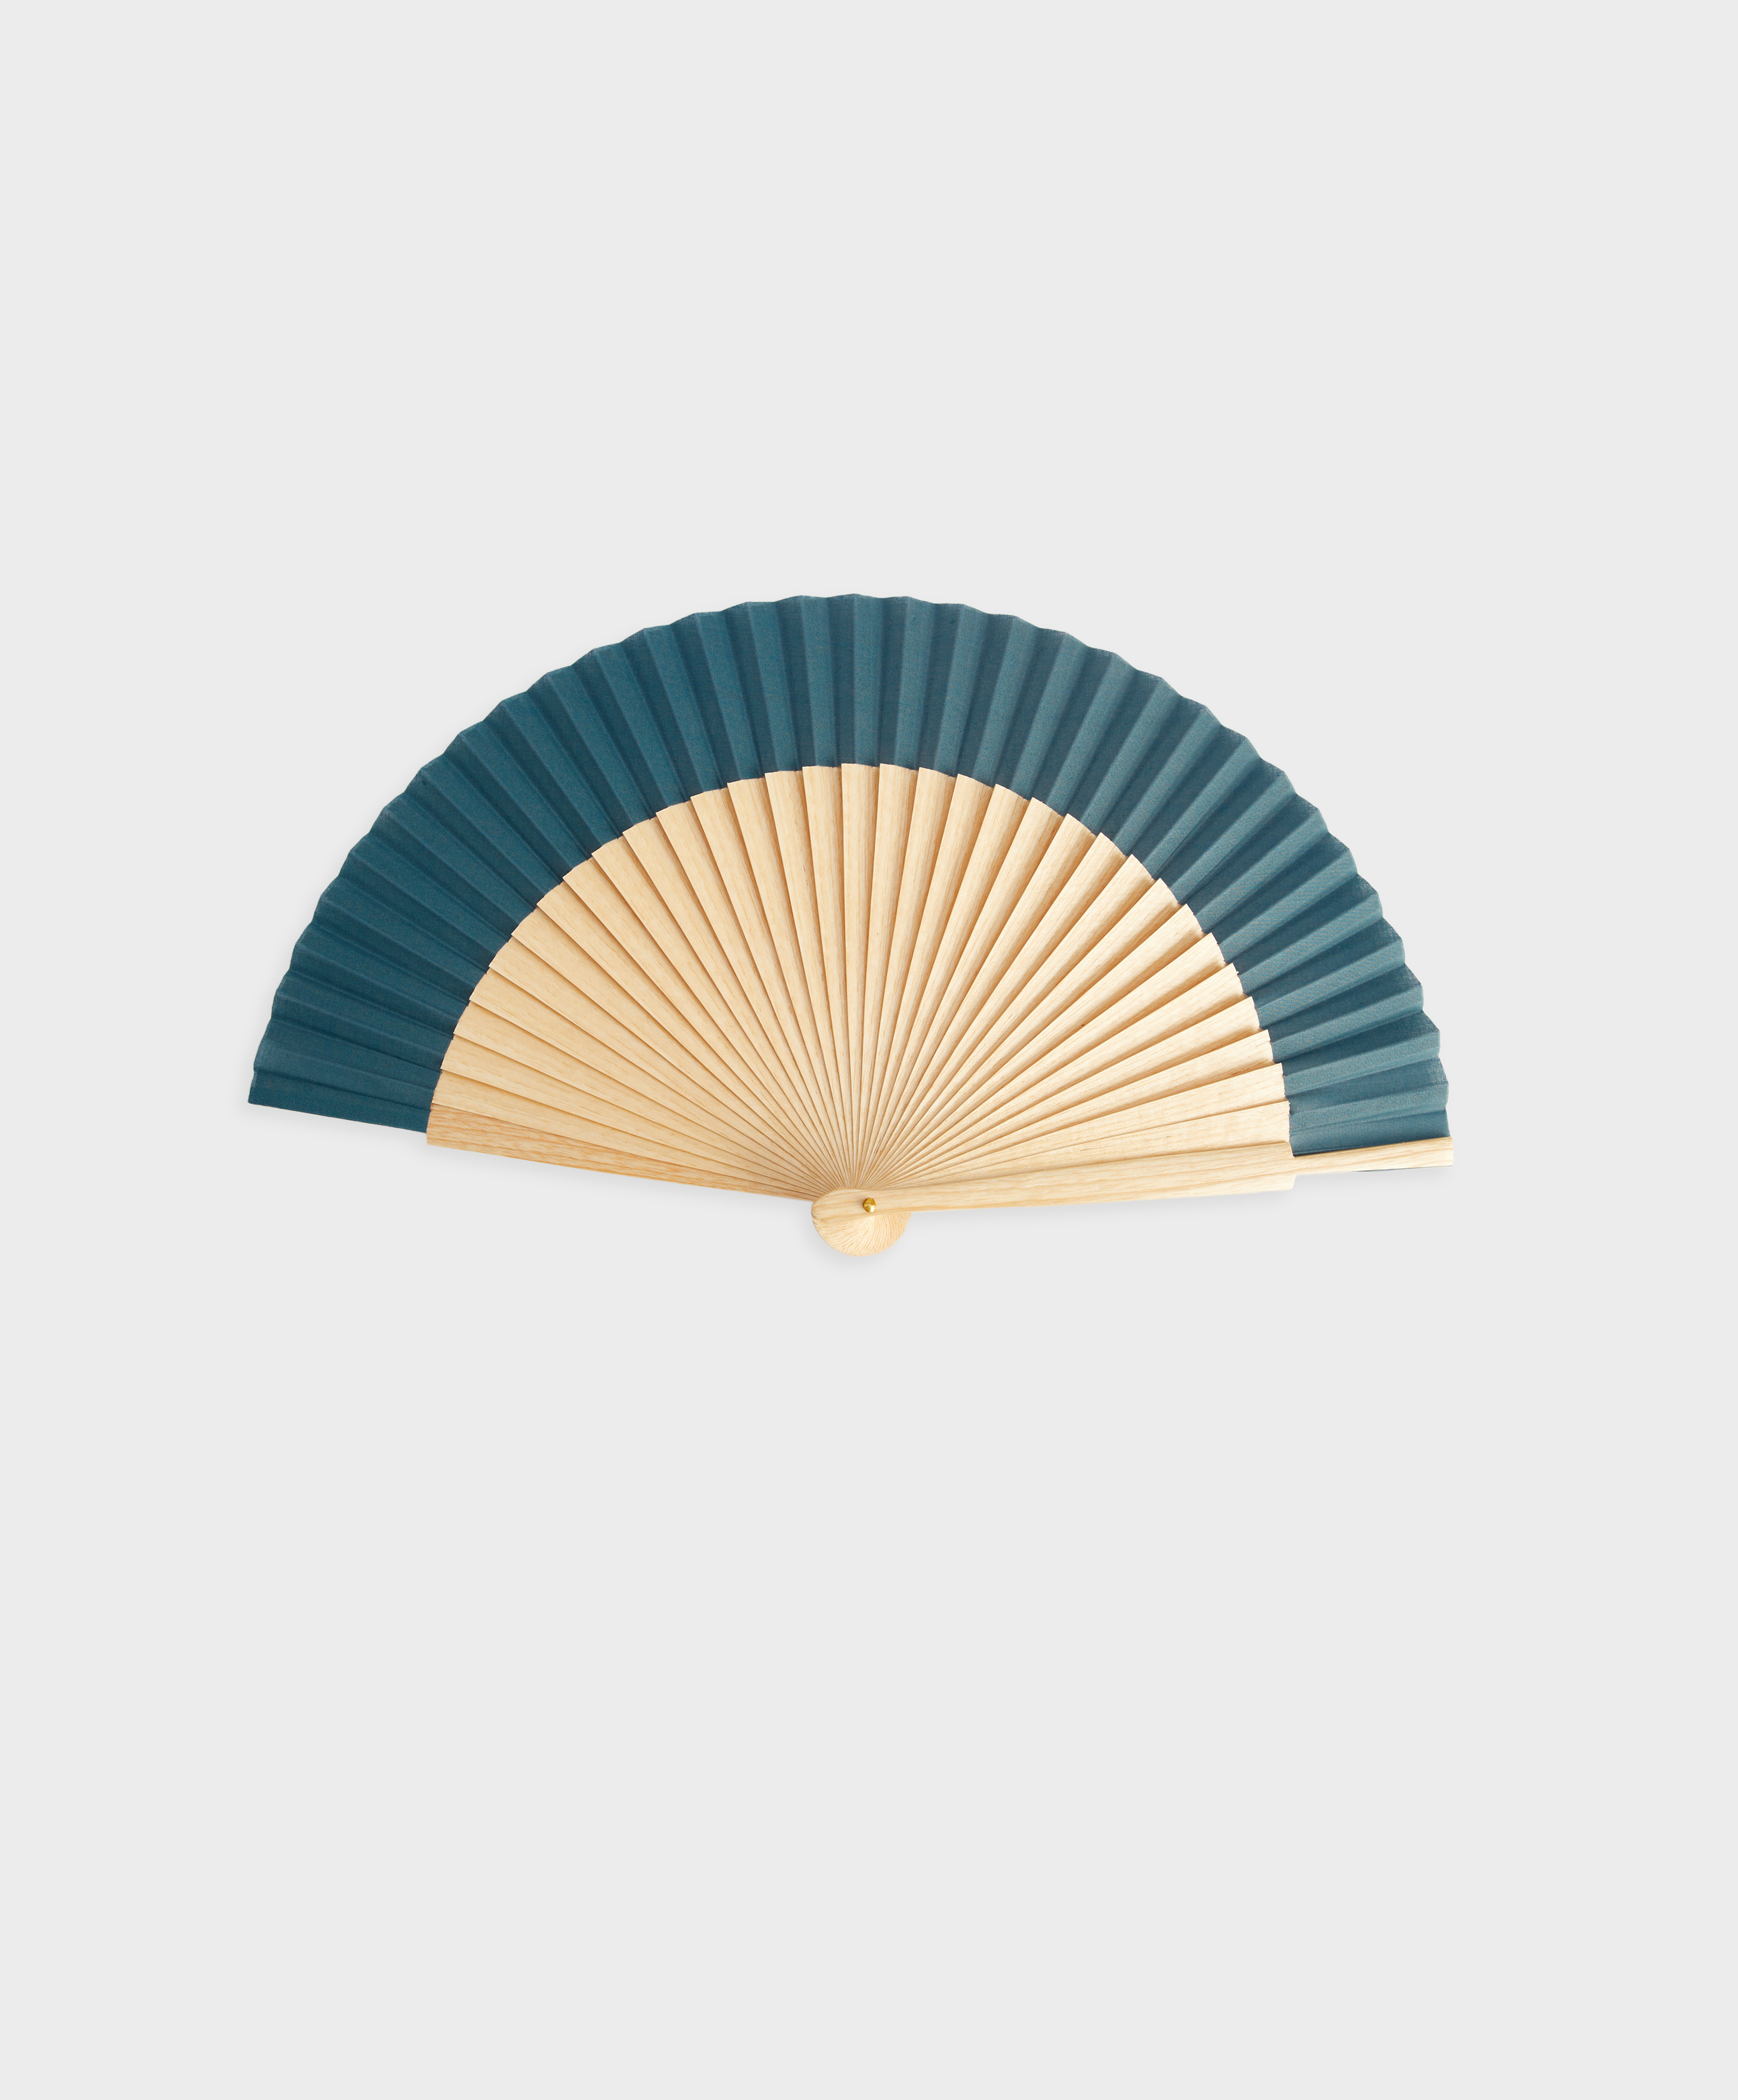 Printed wooden fan